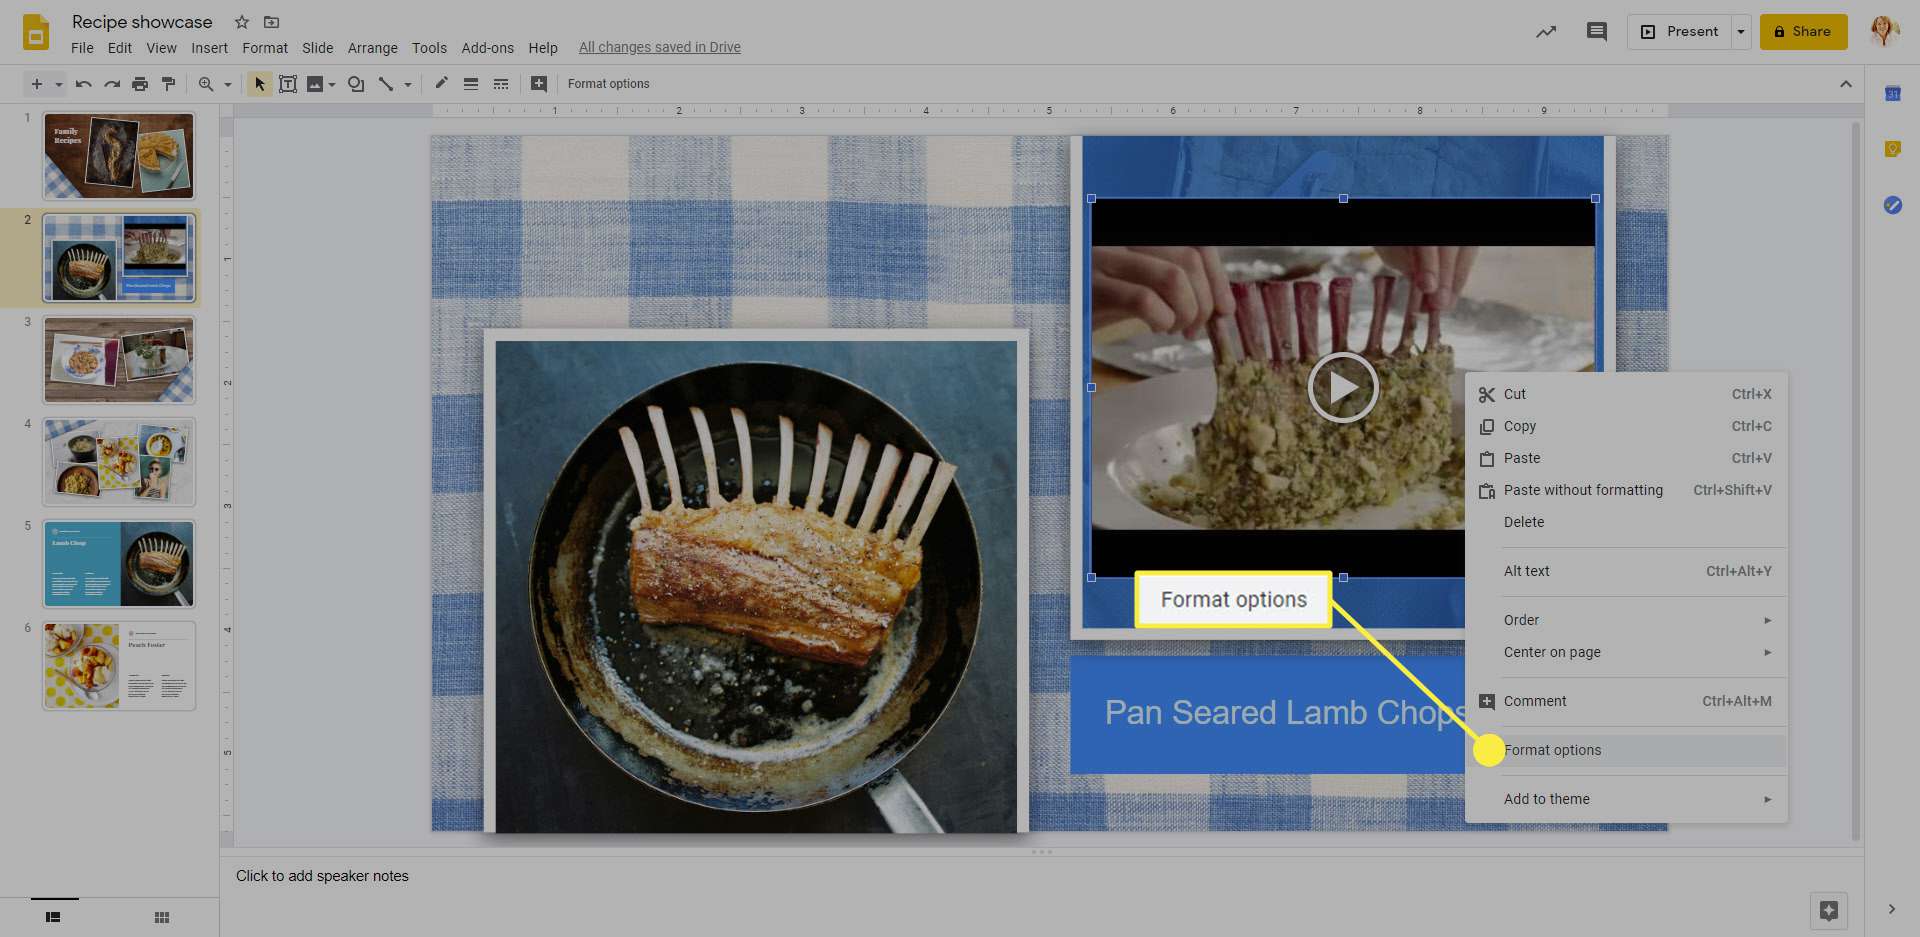 Alternativen för videoformat i Google Slides.